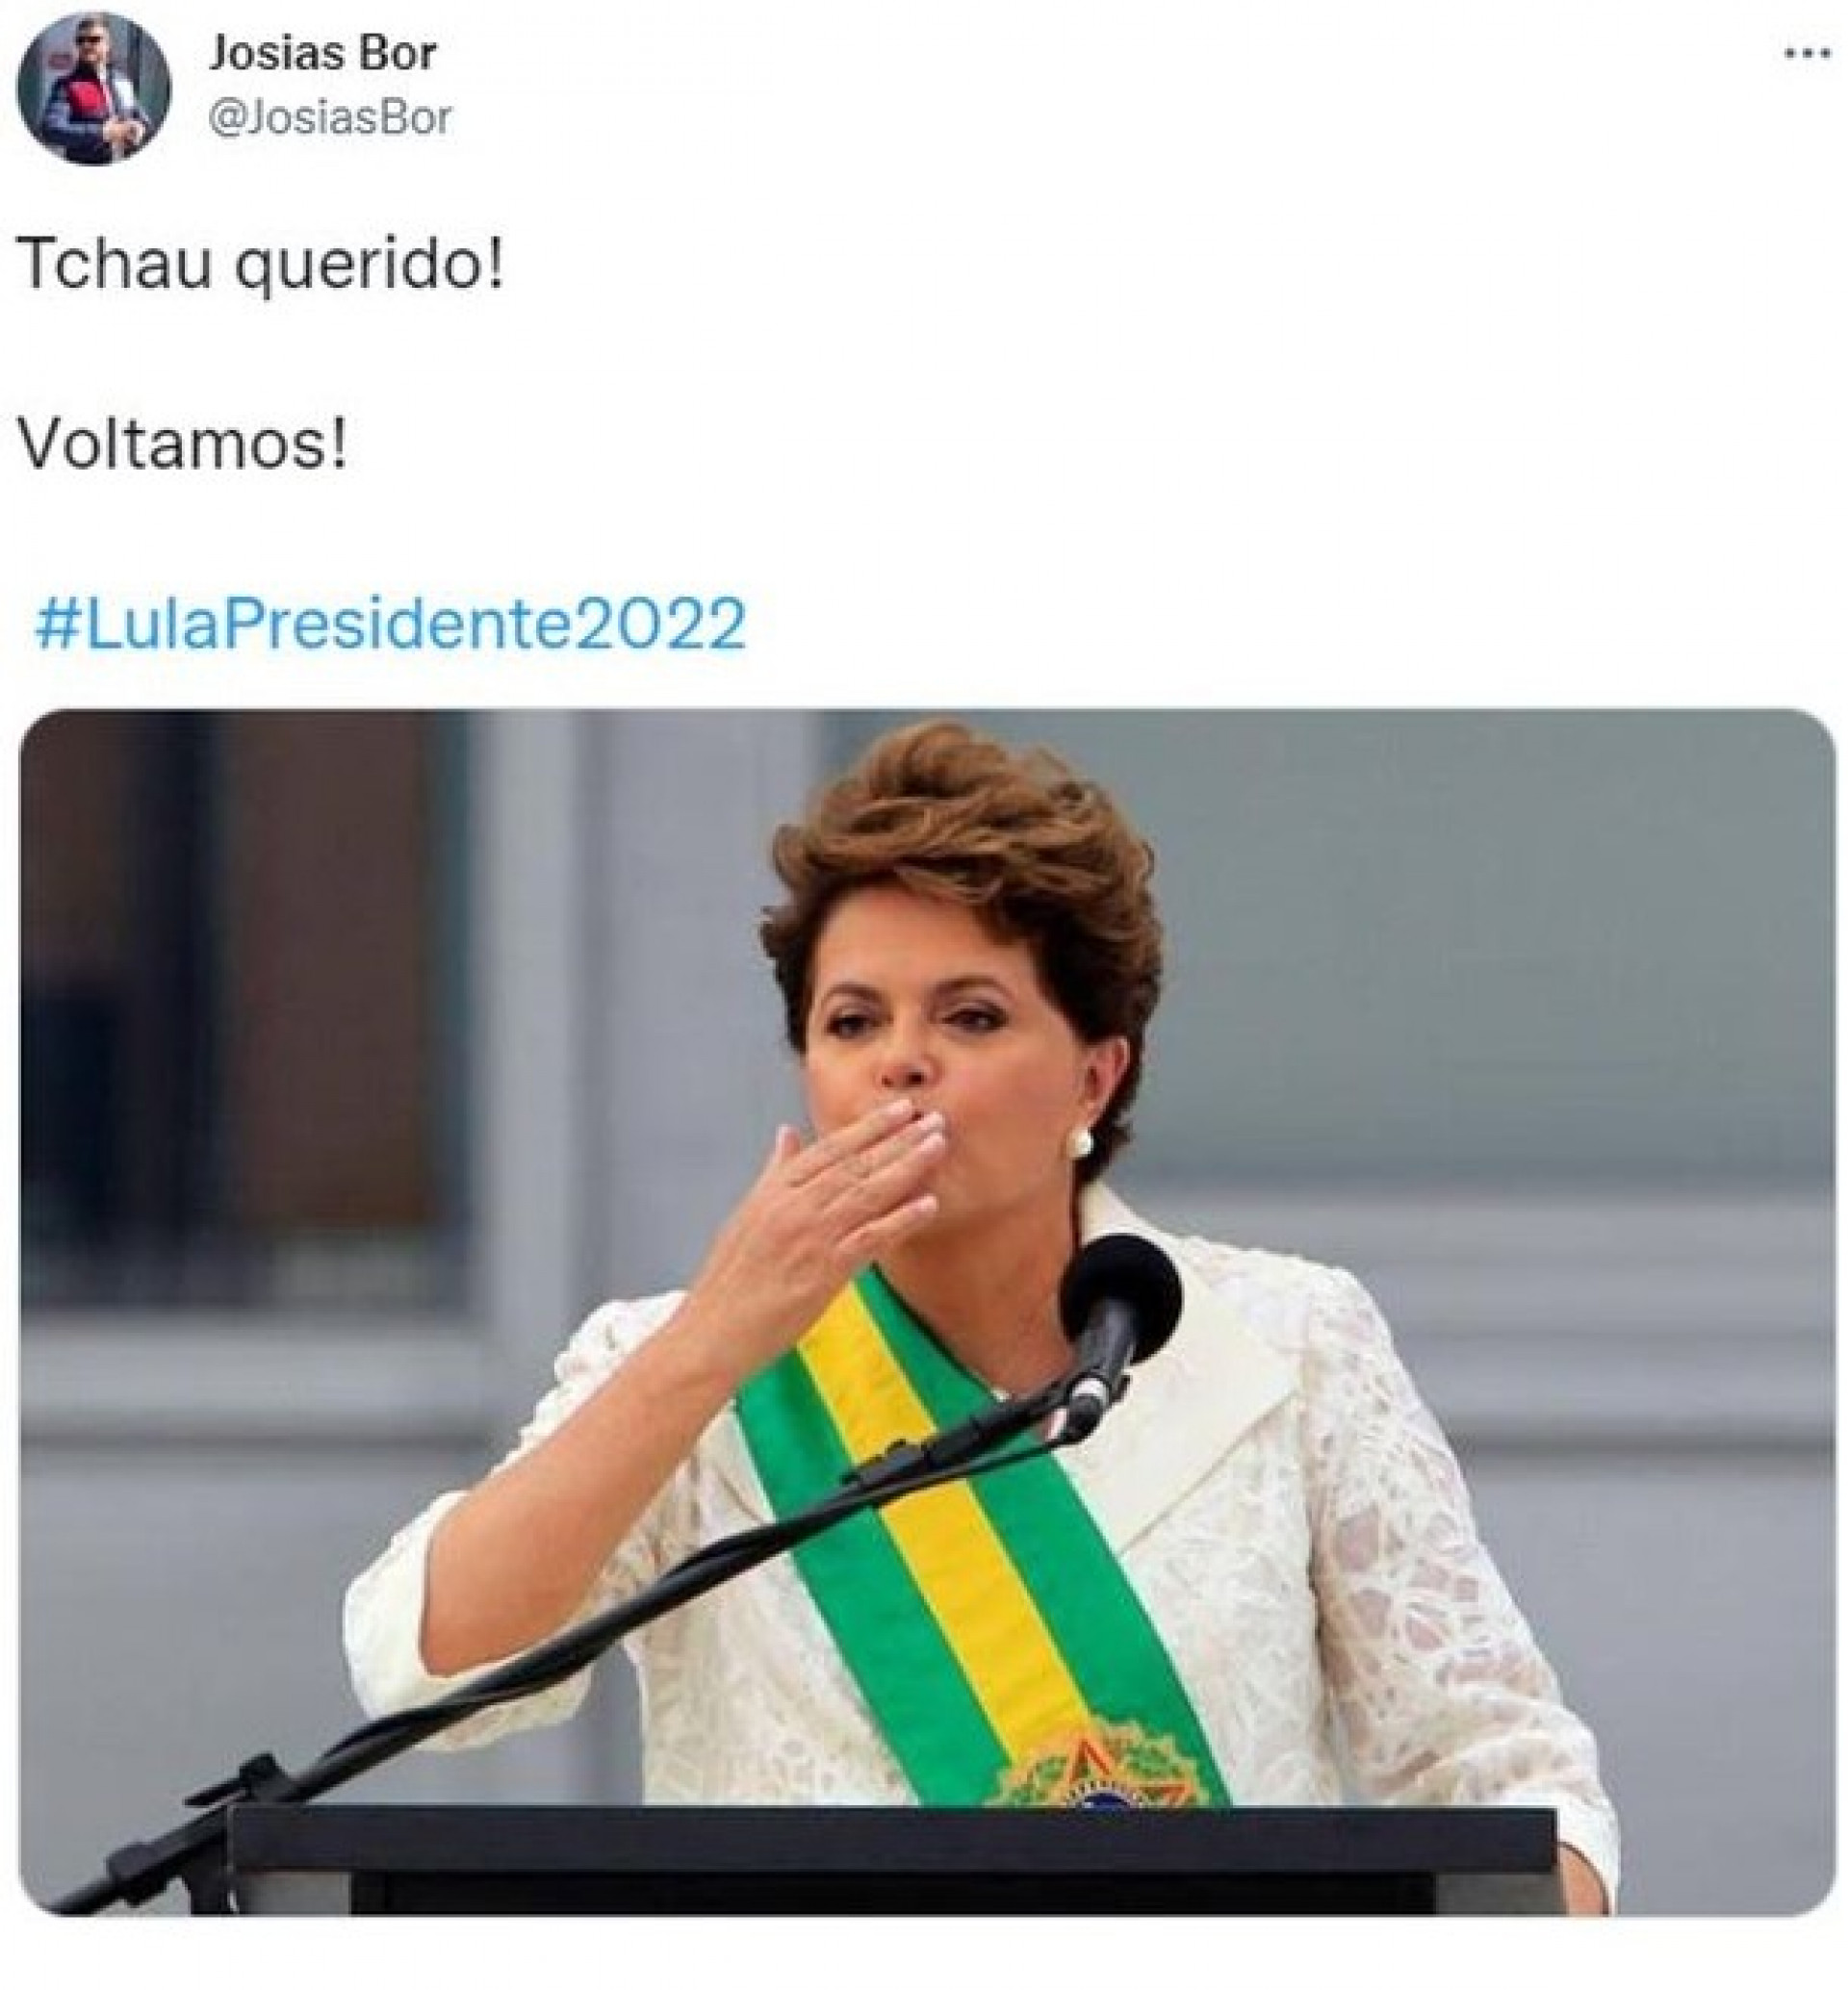 Outra das imagens compartilhadas mostra a ex-presidente Dilma Rousseff (PT) com a faixa presidencial, e afirma: "Voltamos!"